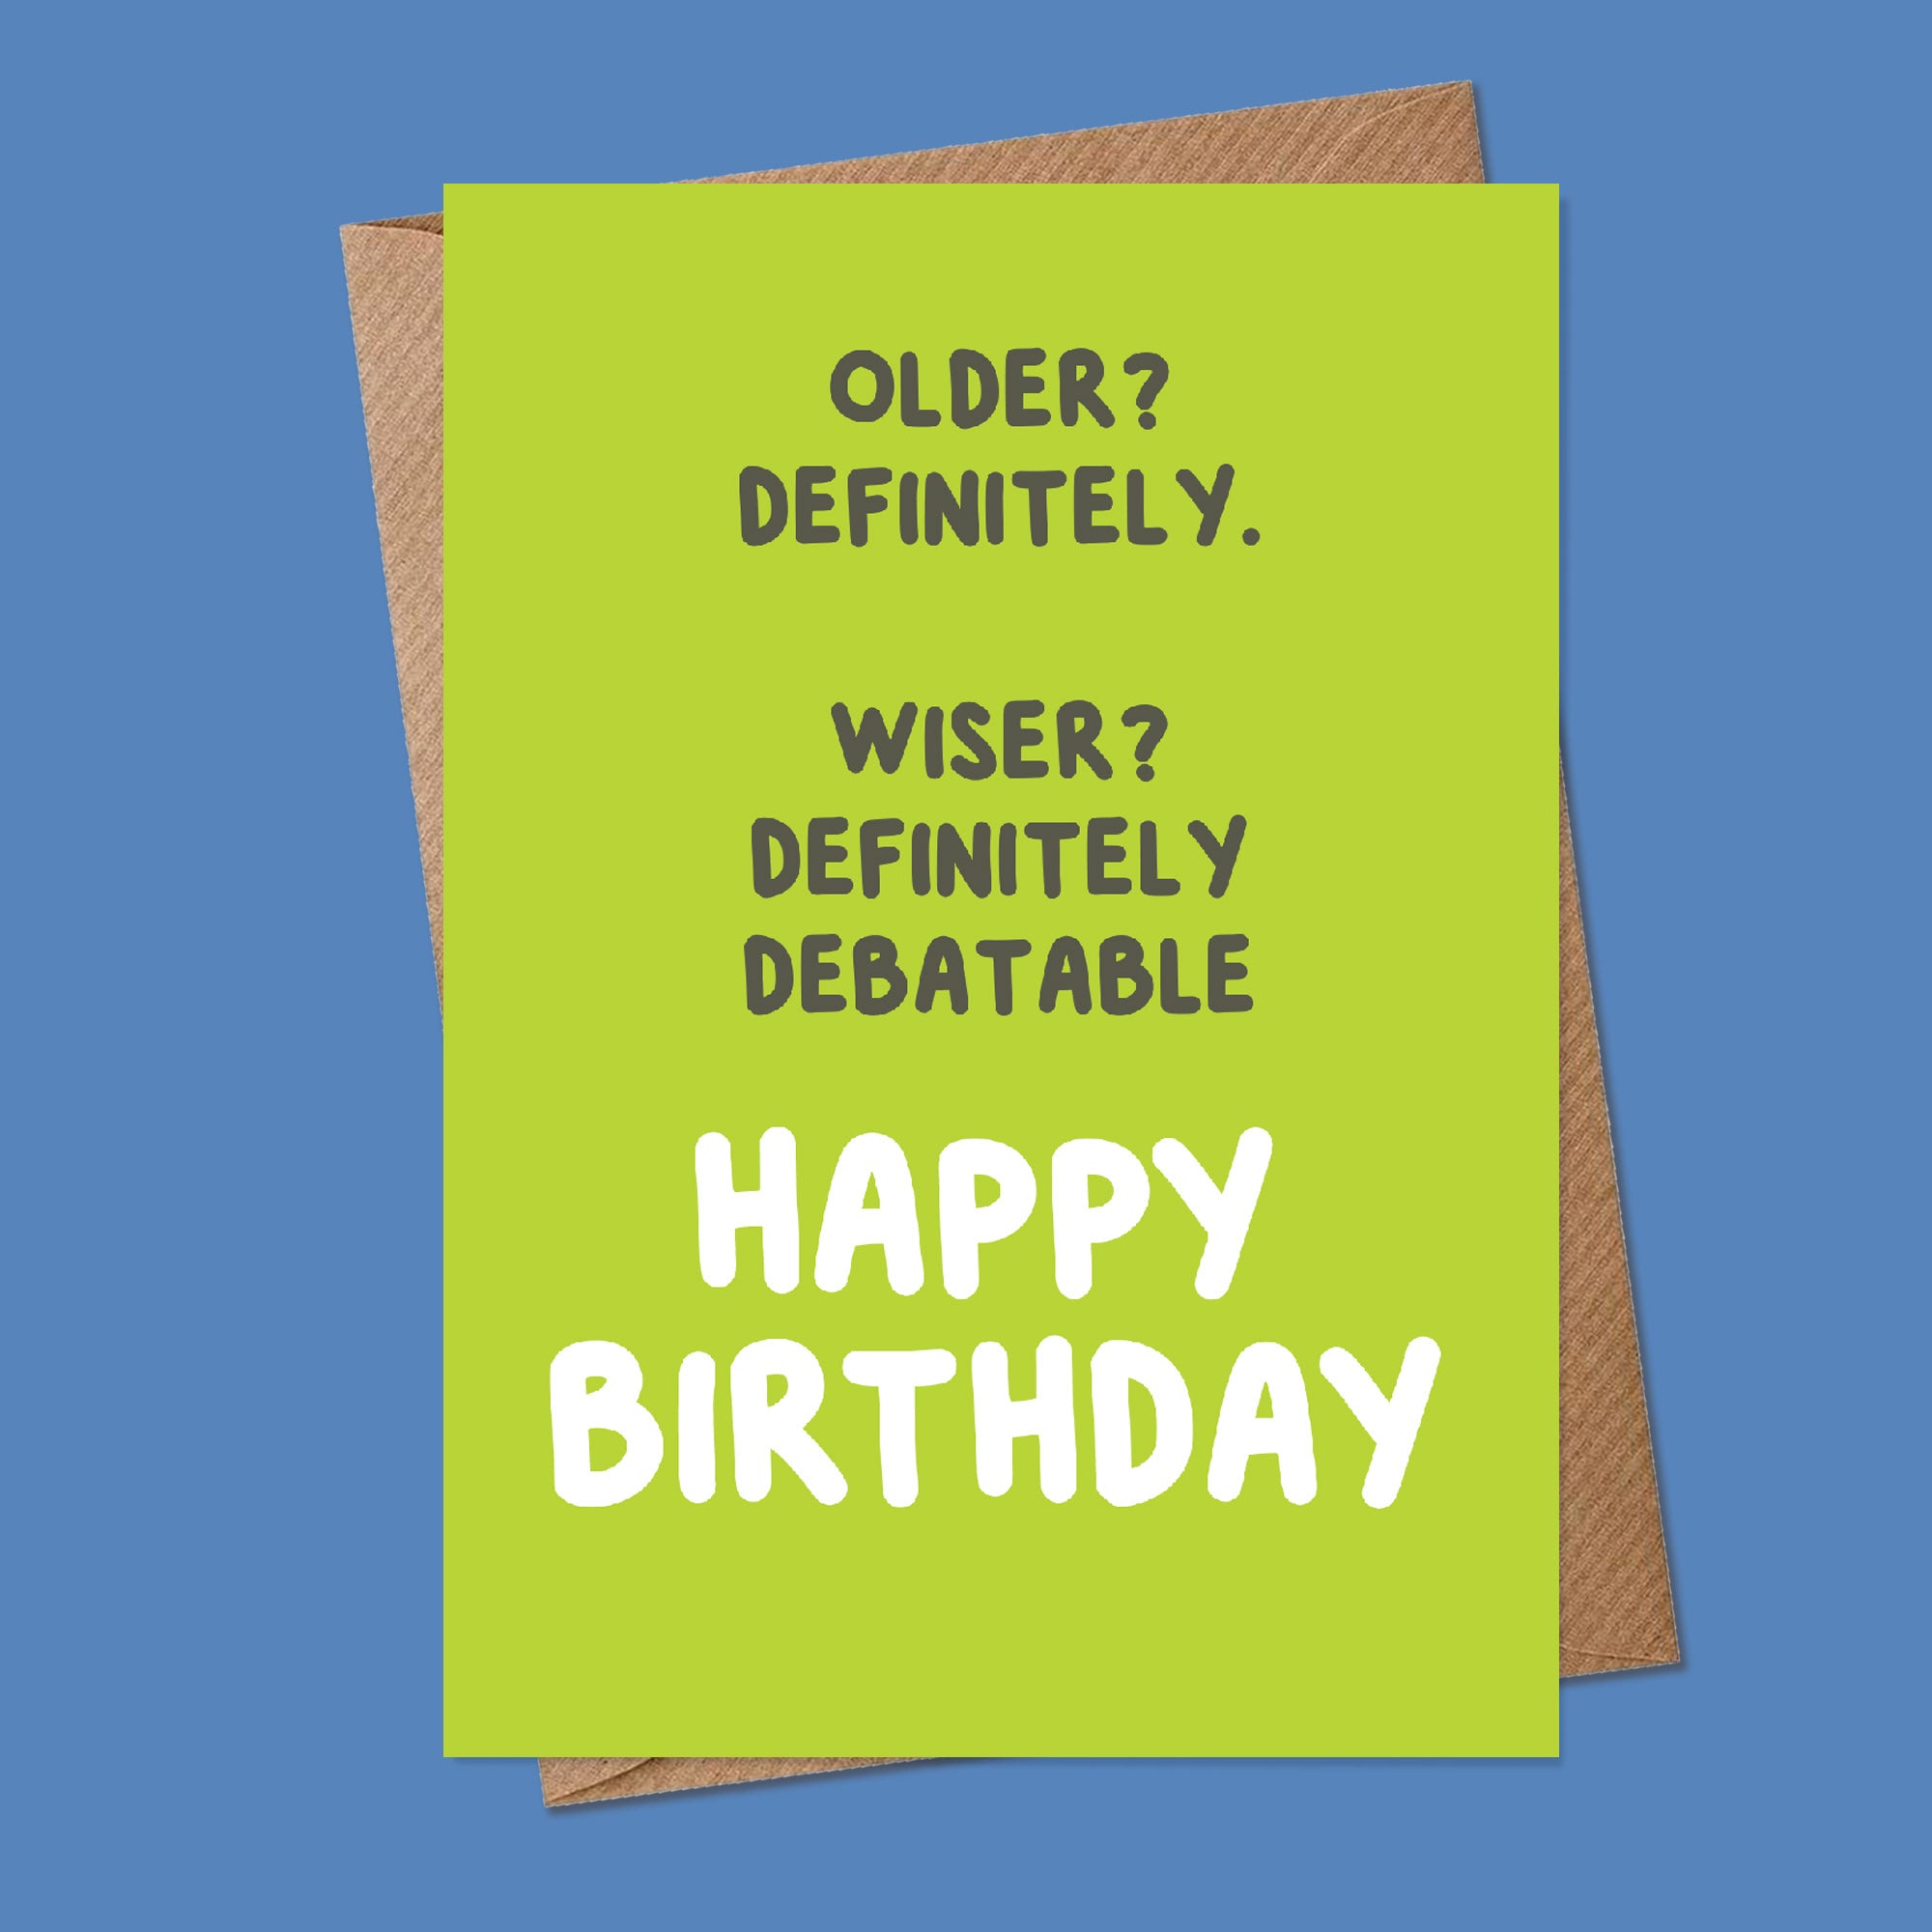 OLDER? WISER? HAPPY BIRTHDAY - Greetings Card